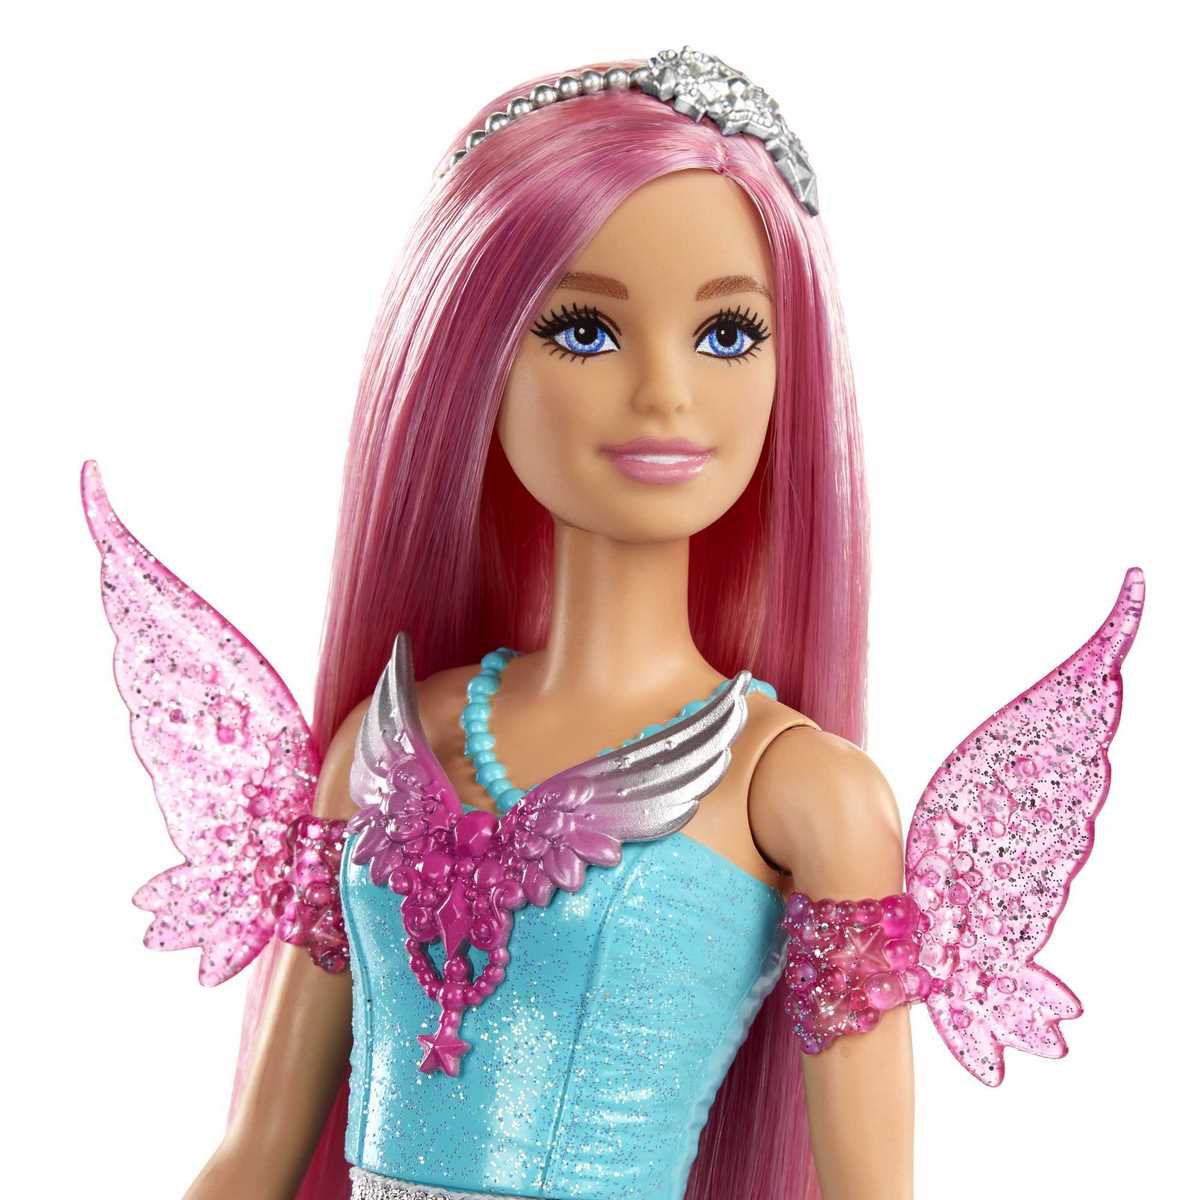 Barbie magique - Trouvez le meilleur prix sur leDénicheur